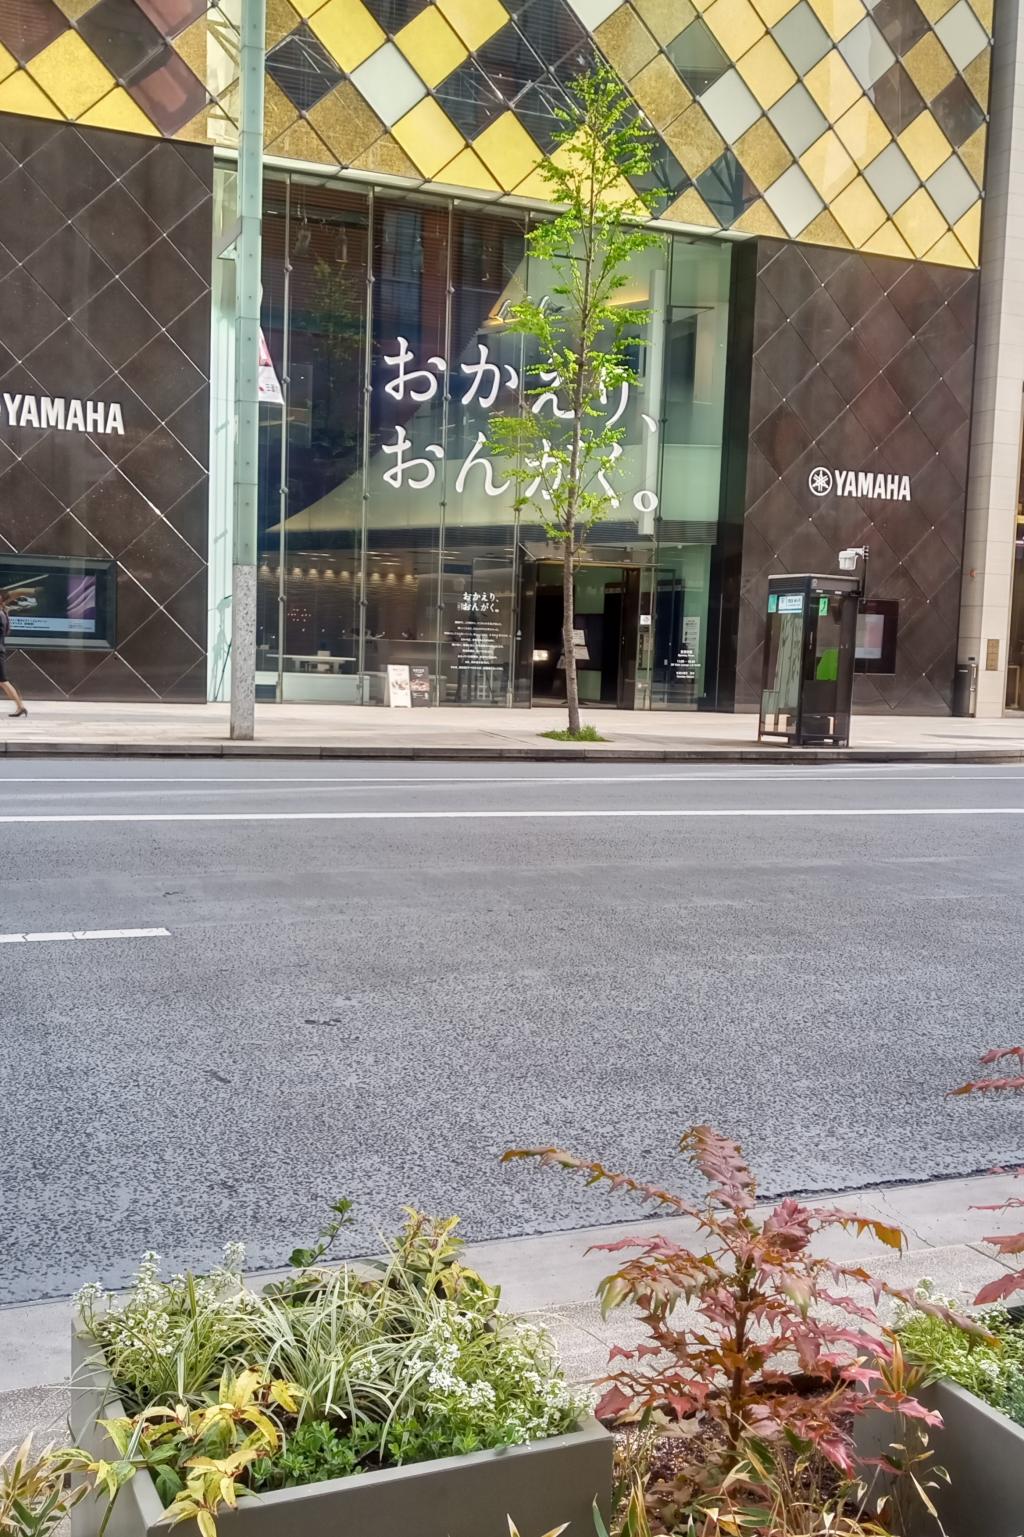 按照銀座在人行道賞葉植物 Okaeriongaku By銀製 中央區觀光協會特派員部落格